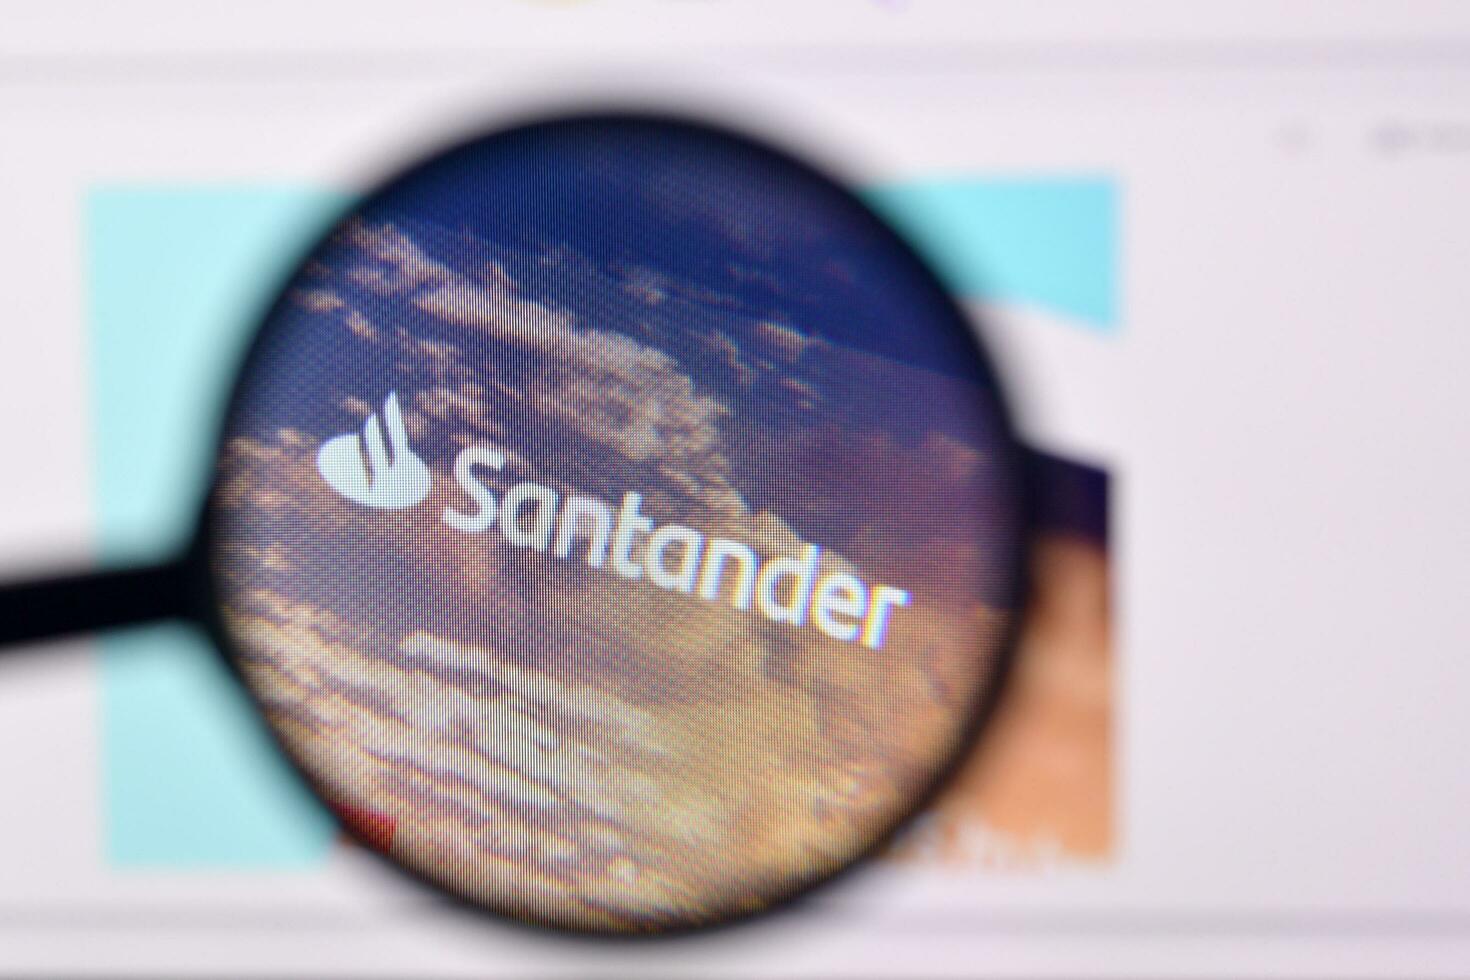 Homepage of santander website on the display of PC, url - santander.com. photo